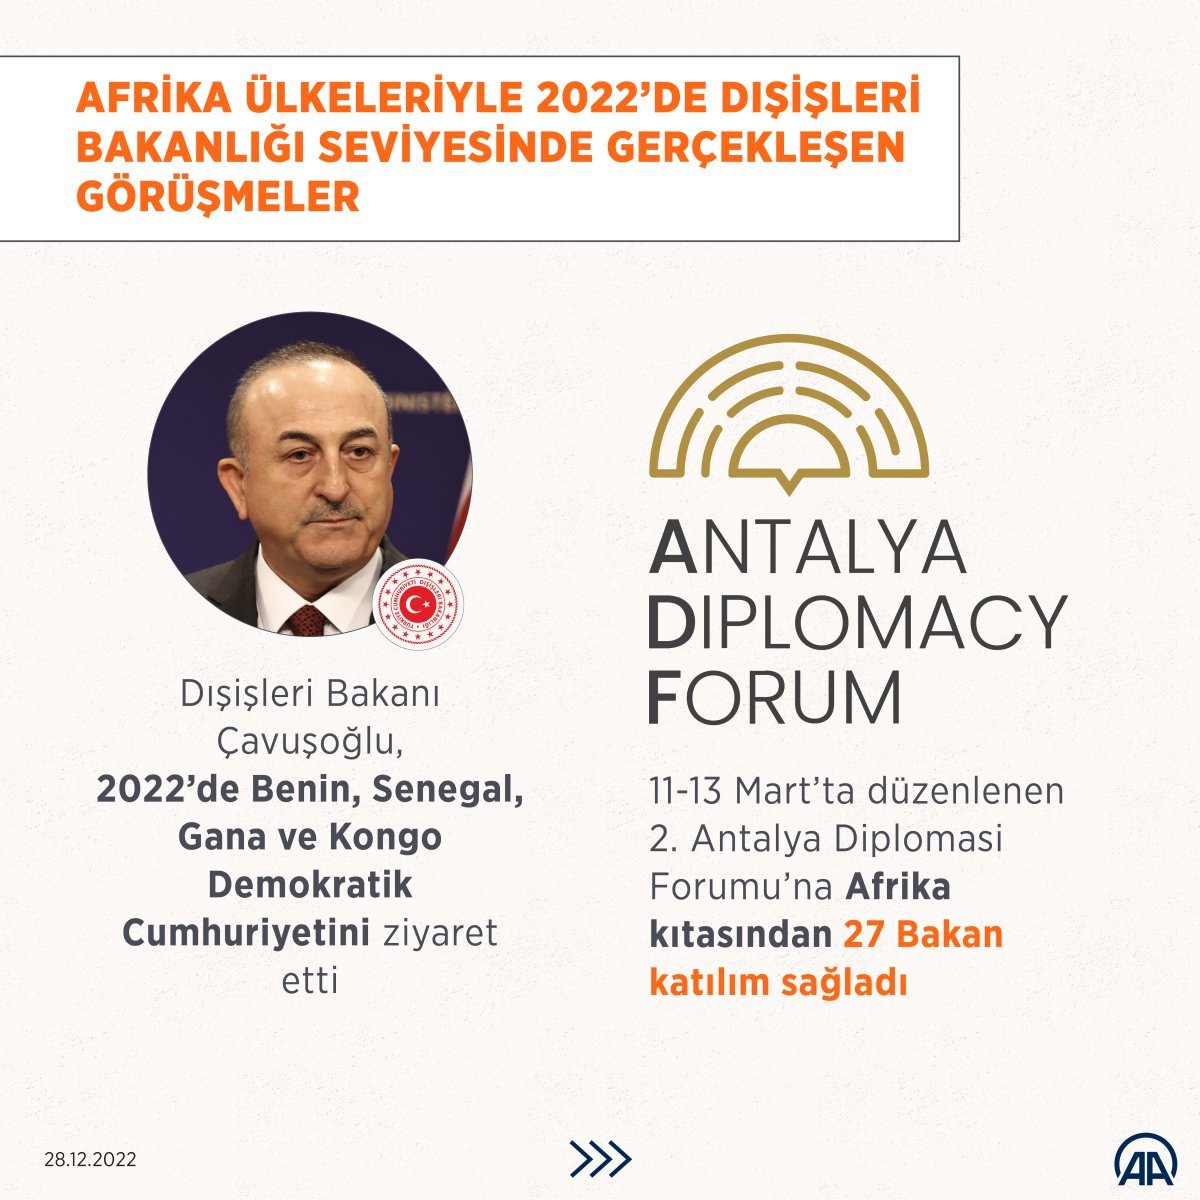 Türkiye, 2022 de Afrika ülkeleriyle yoğun temaslar kurdu #3